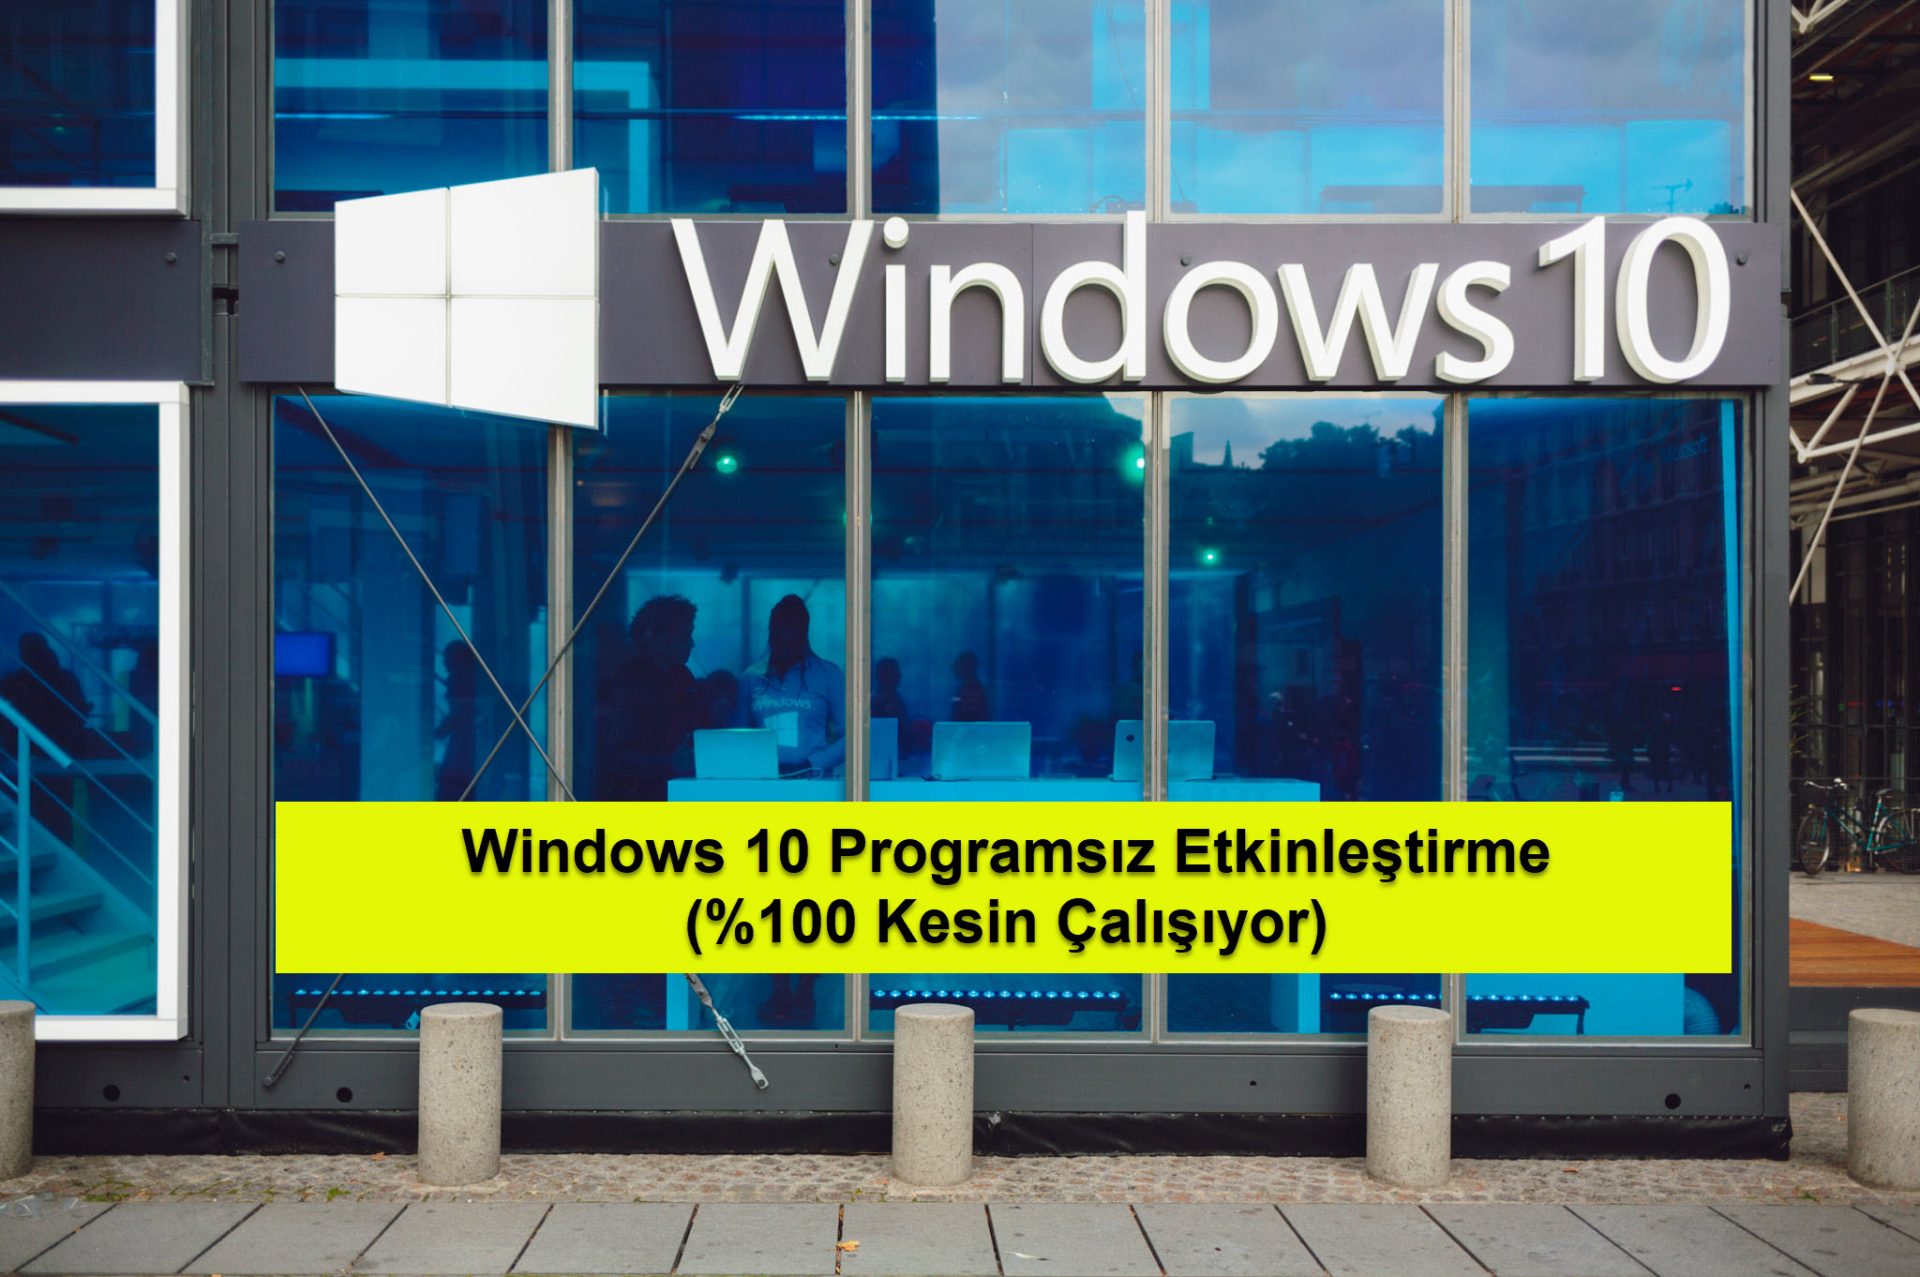 Windows 10 Programsiz Etkinlestirme 9